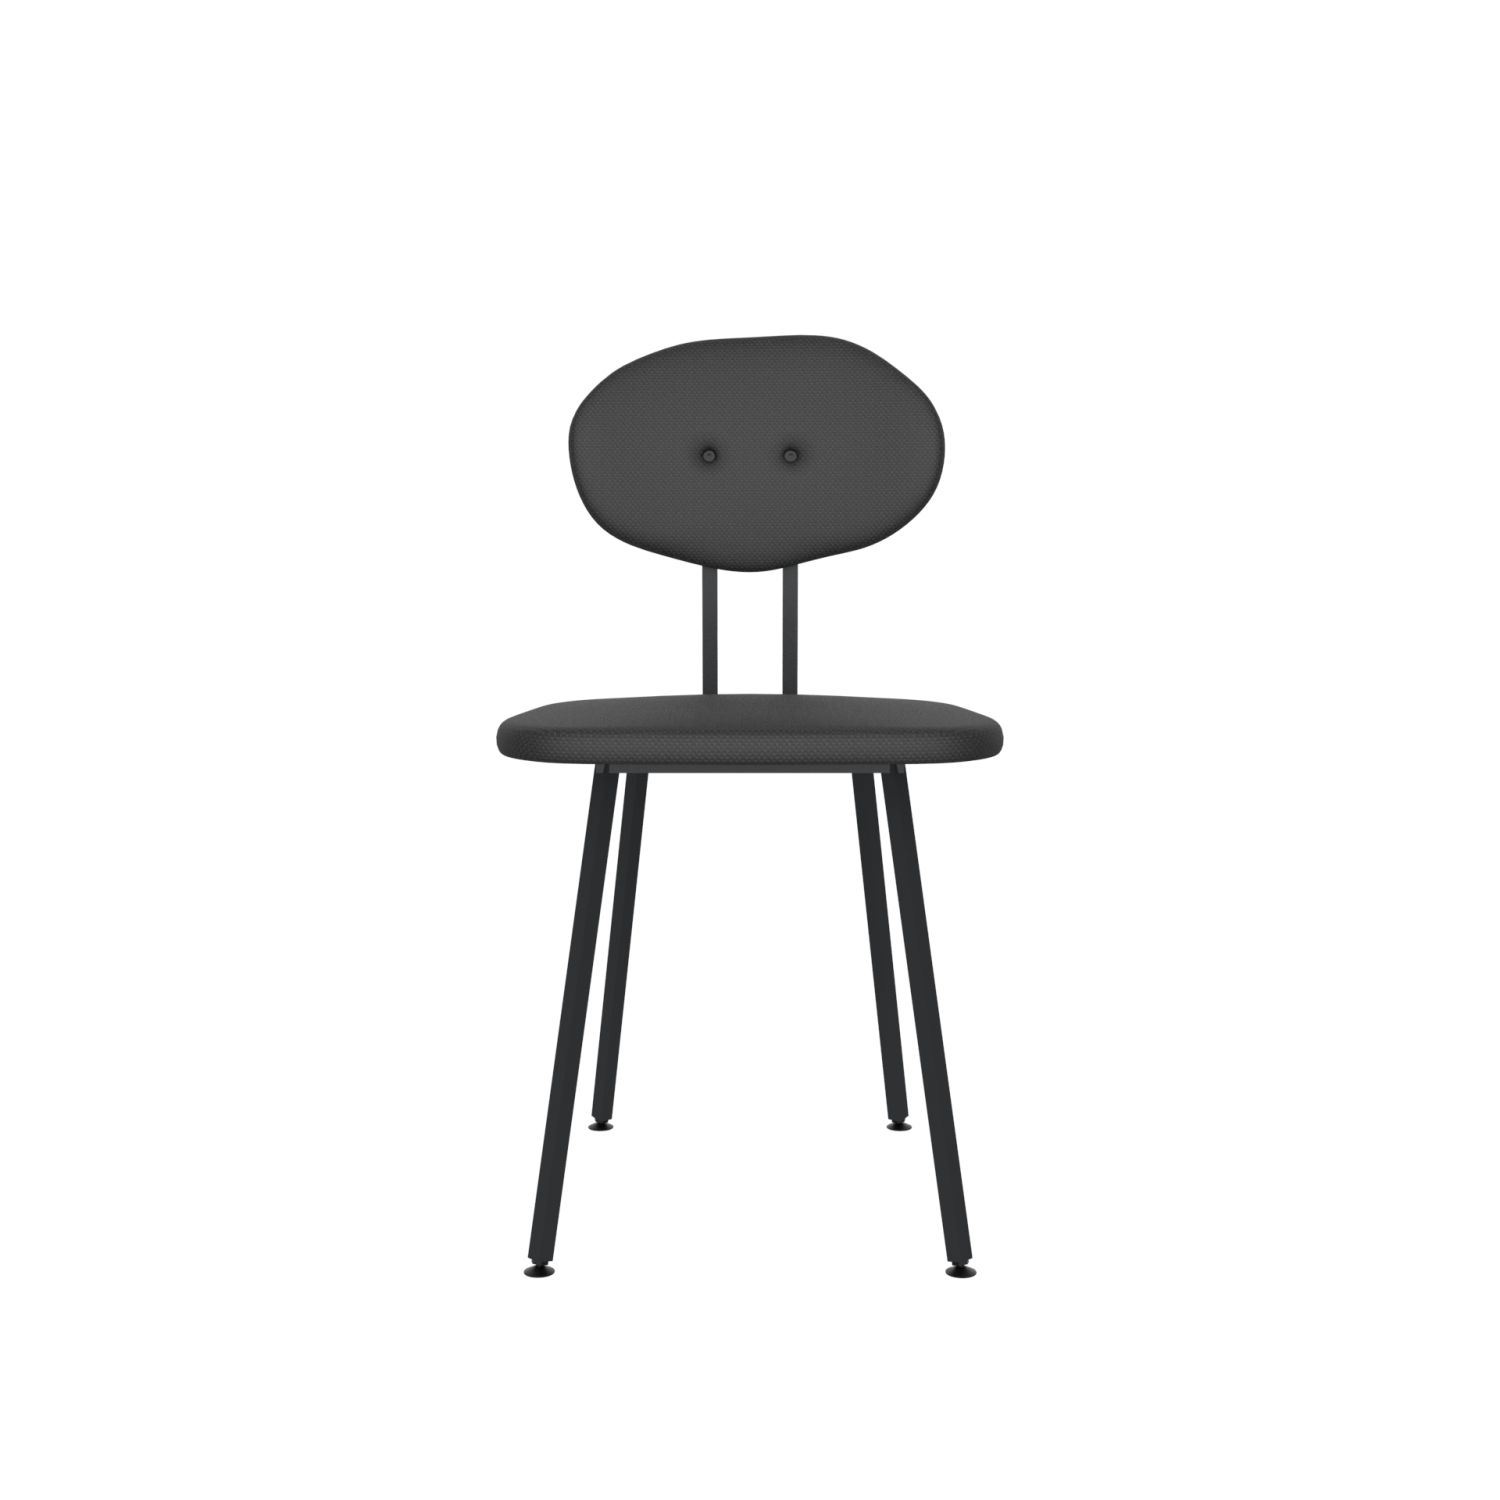 lensvelt maarten baas chair 101 not stackable without armrests backrest d havana black 090 black ral9005 hard leg ends